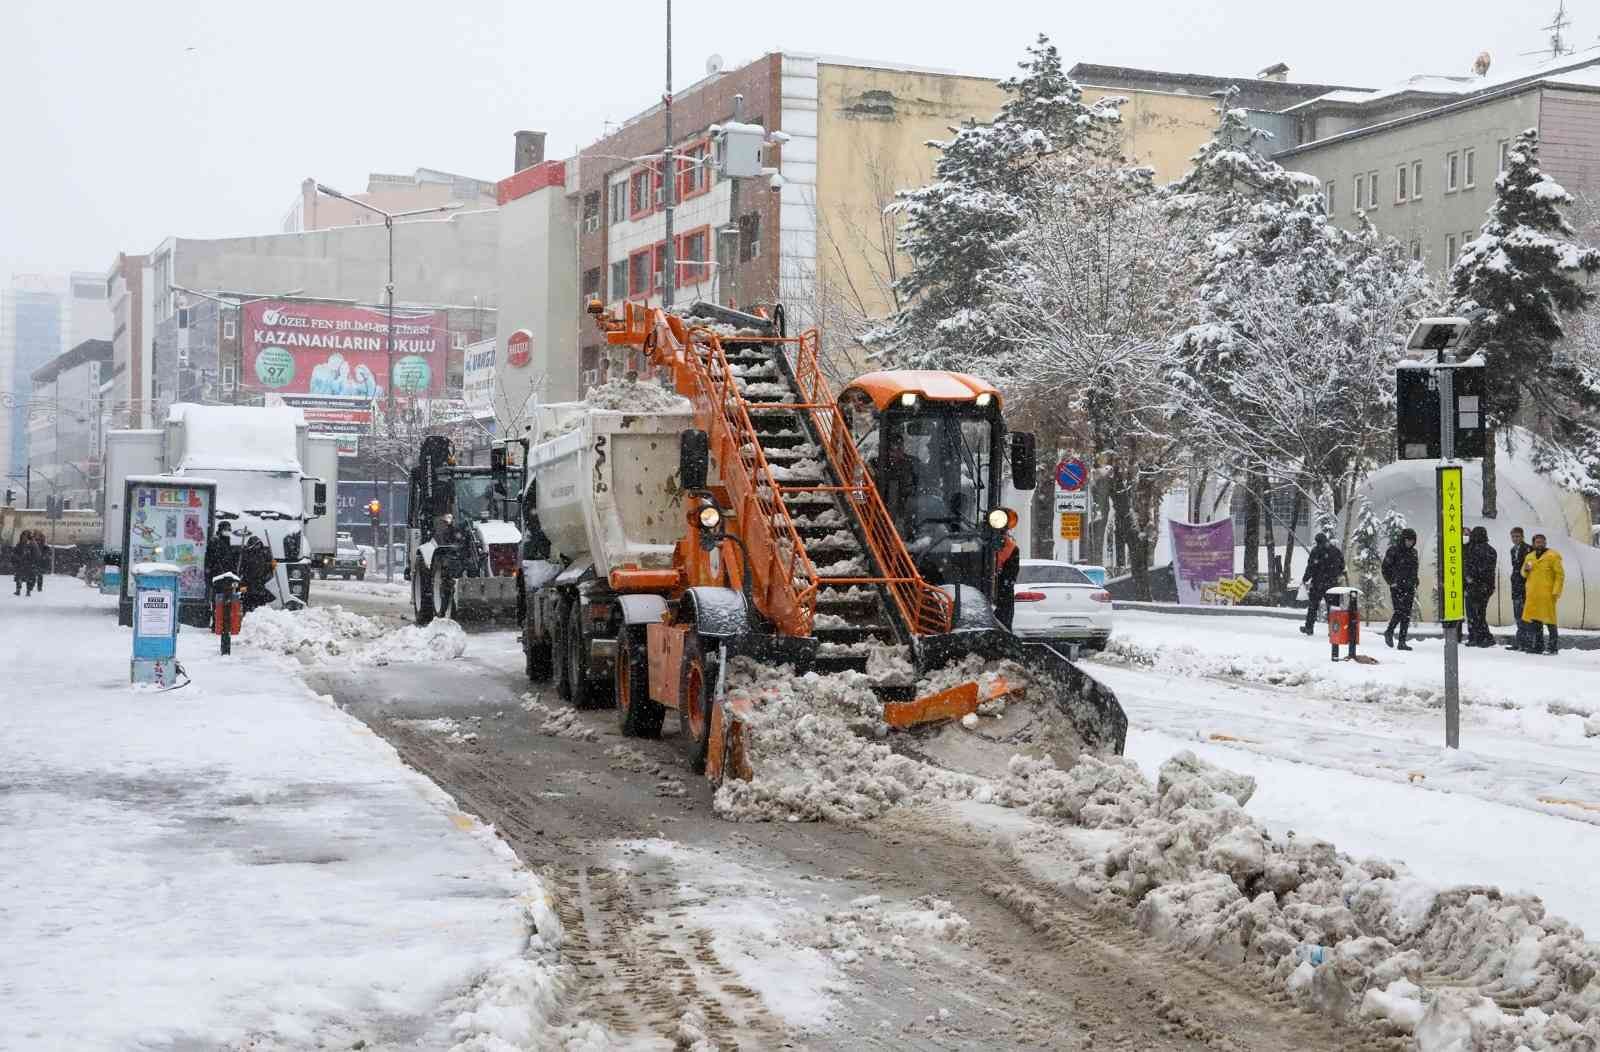 Van Büyükşeheir Belediyesinden karla mücadele çalışması #van